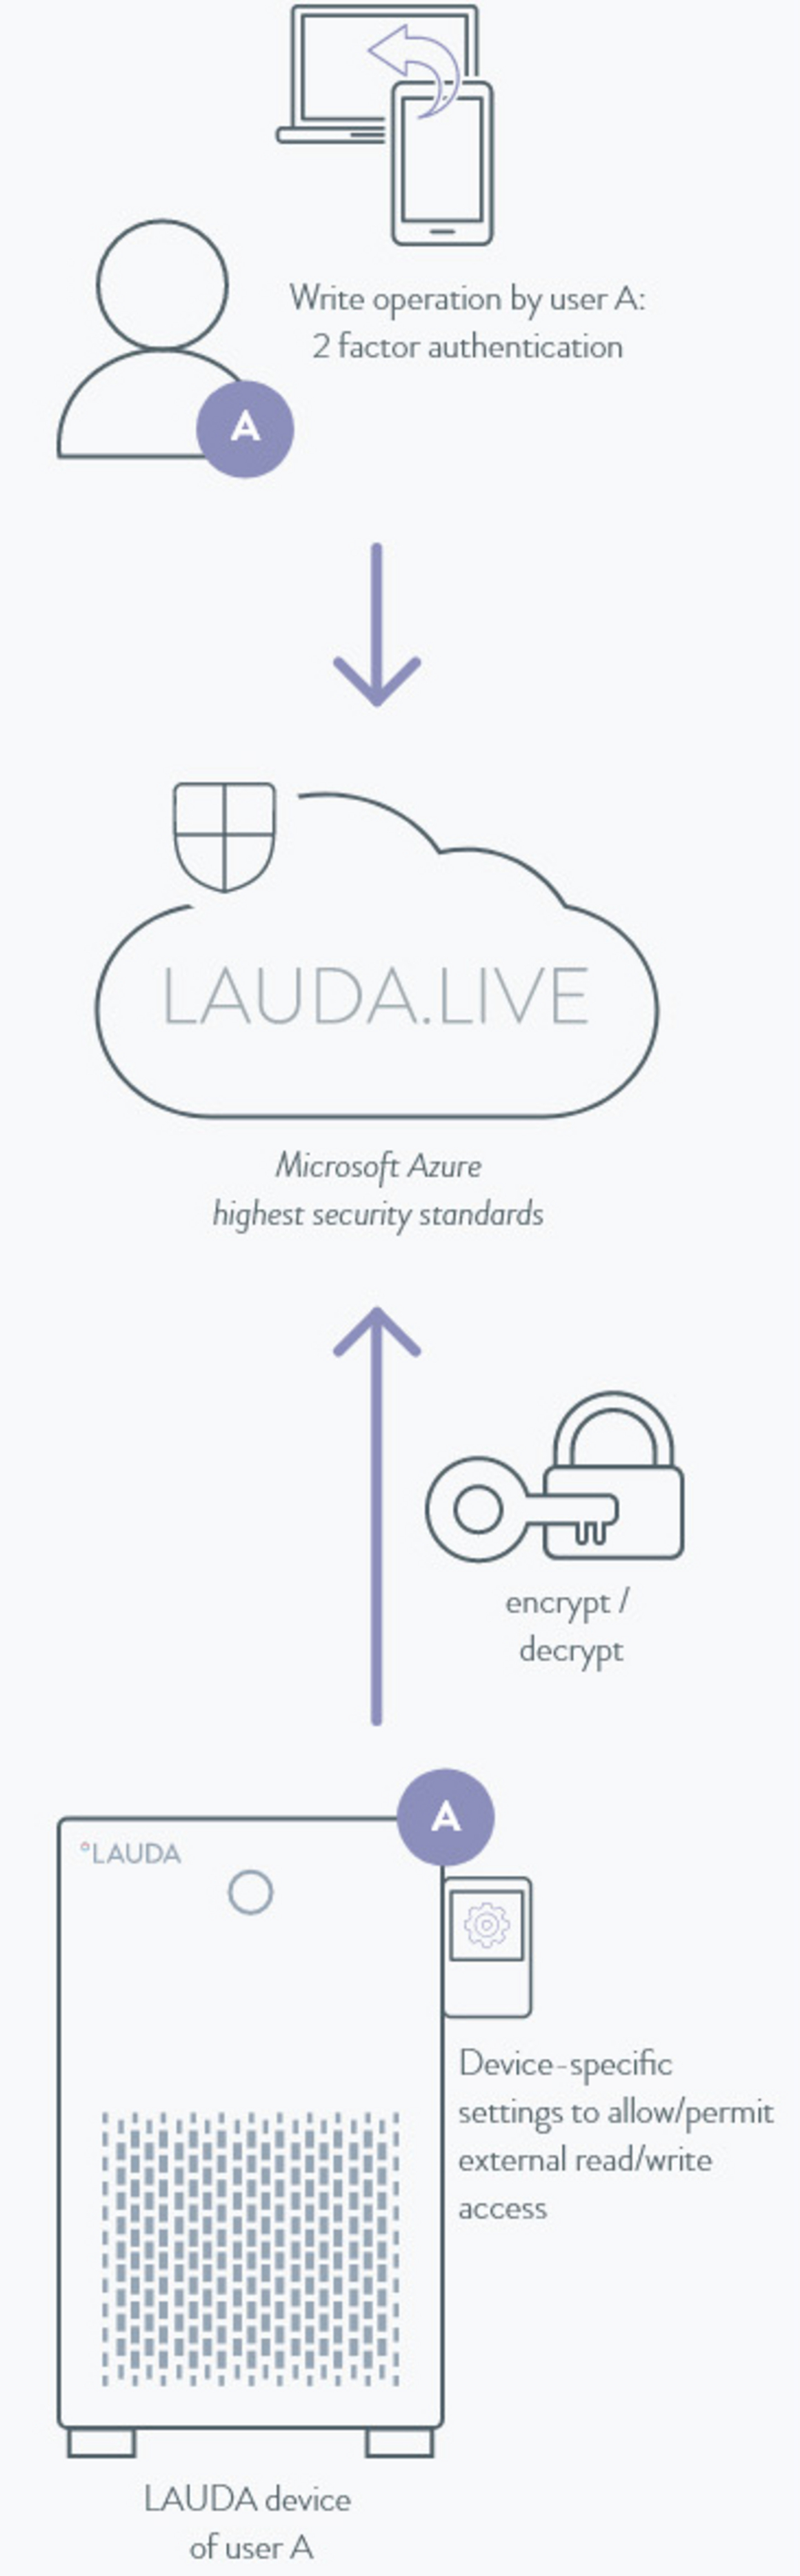 LAUDA.LIVE 安全功能略图。